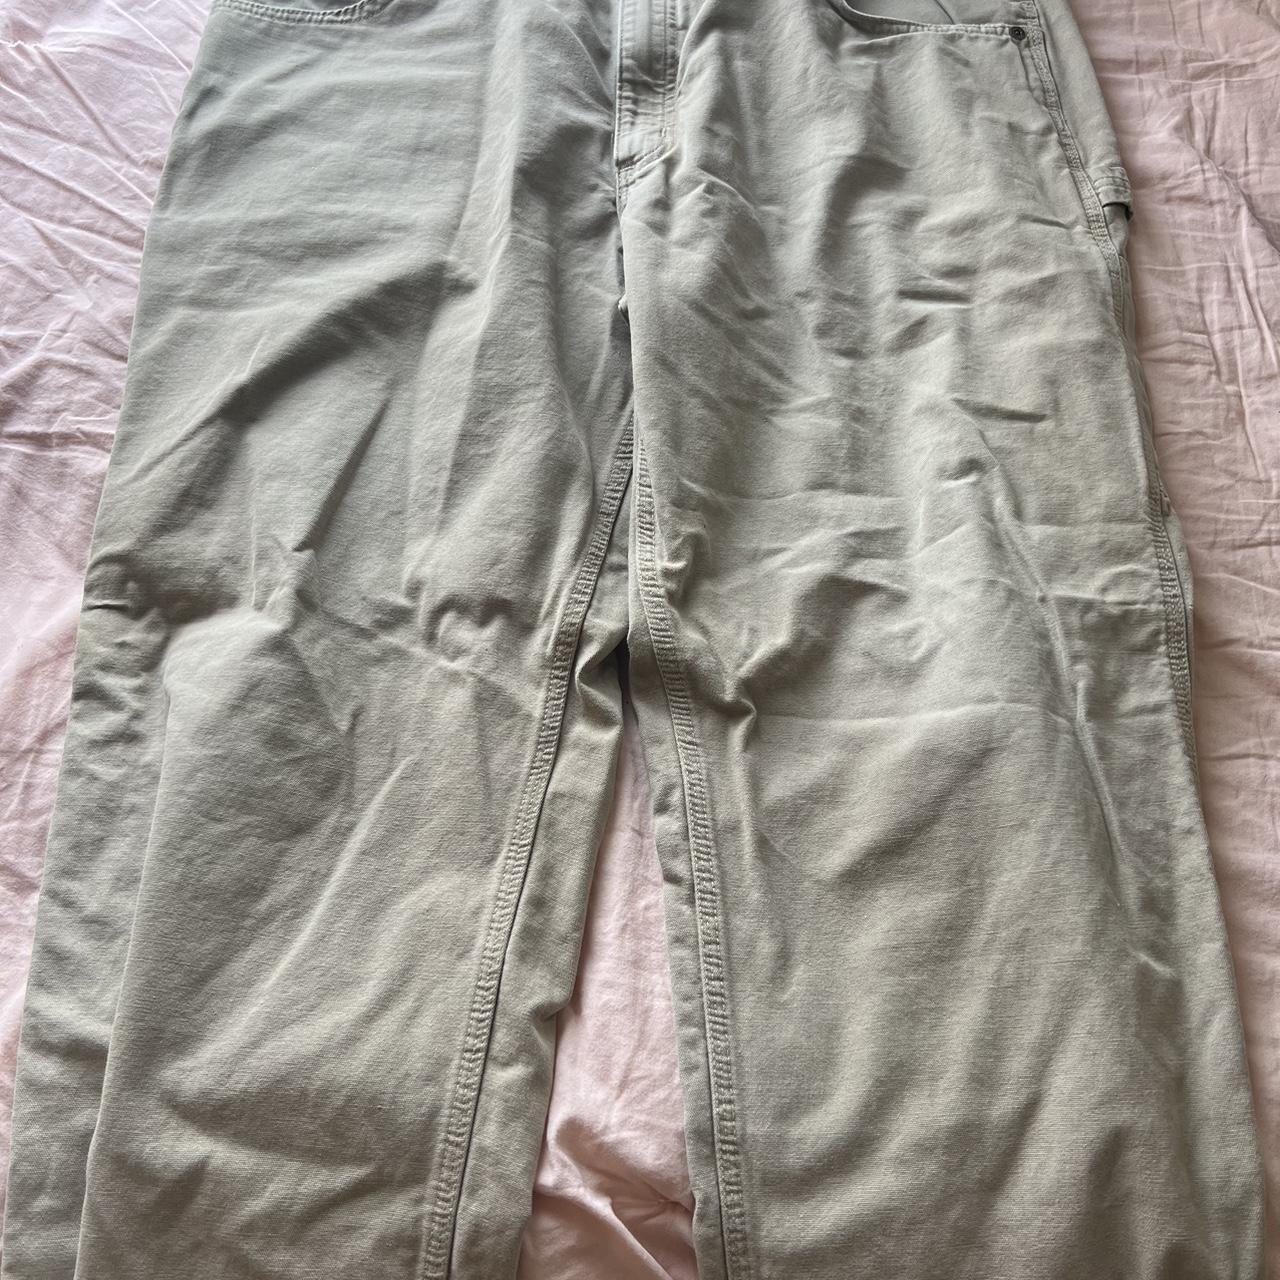 Tan carhartt pants Frayed bottoms - Depop